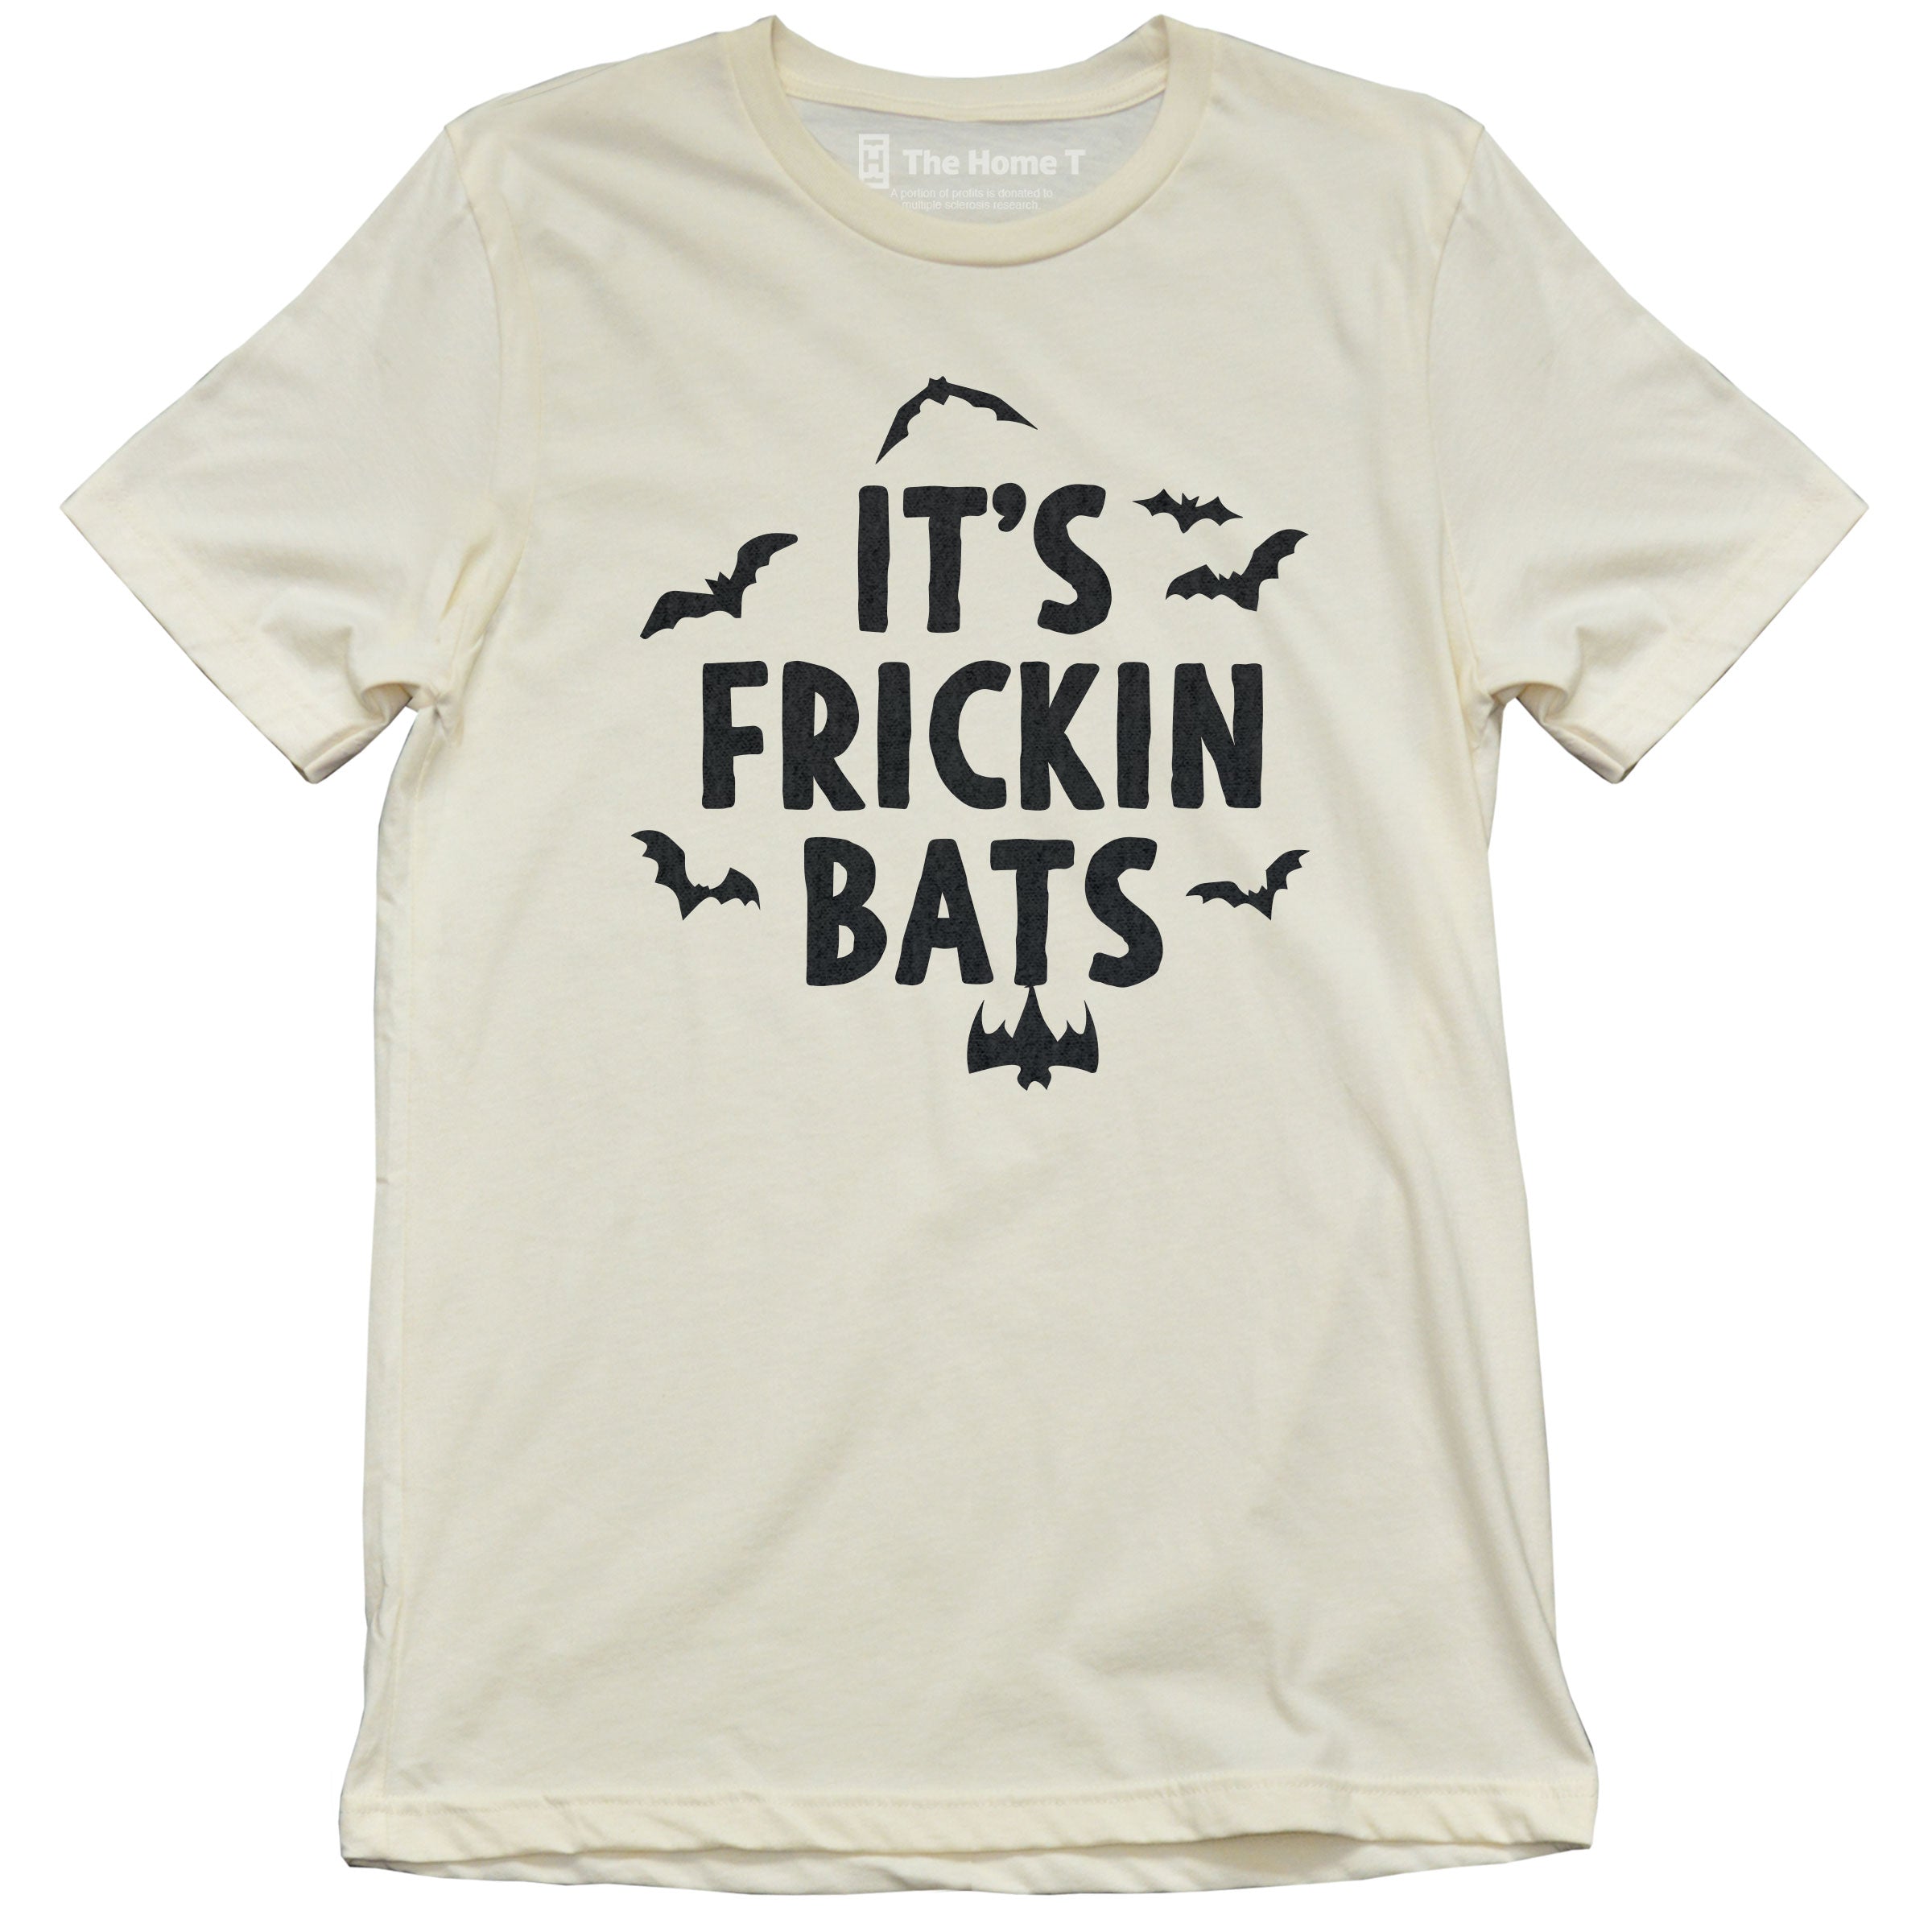 It's Frikin' Bats